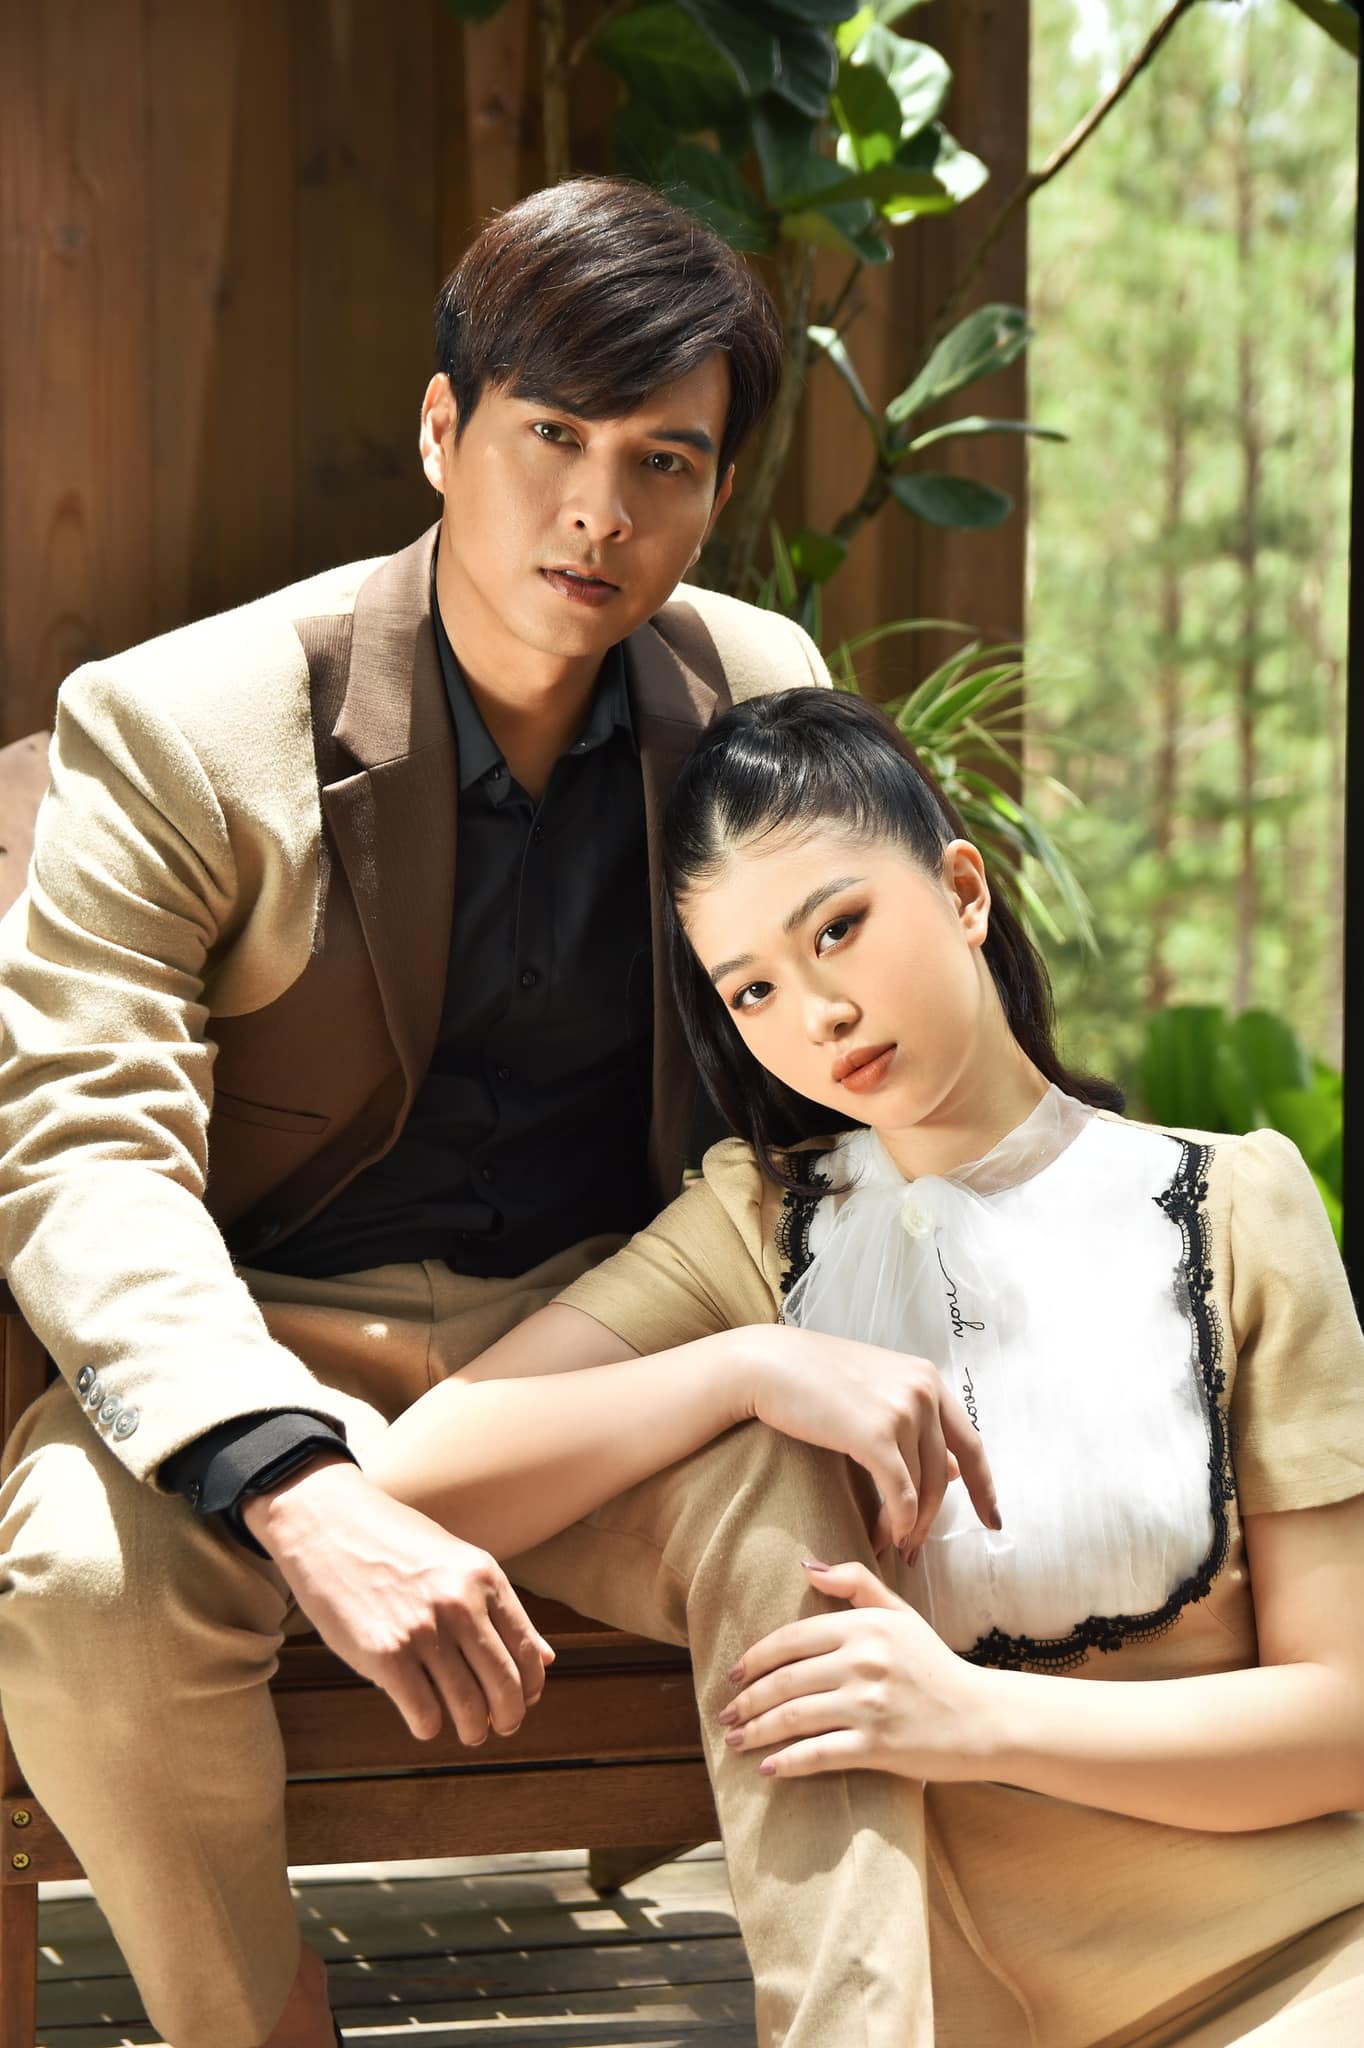 Hồ Quang Hiếu sau chia tay Bảo Anh: “Tôi đang yêu diễn viên trẻ, sẽ cưới trong năm nay” - 5